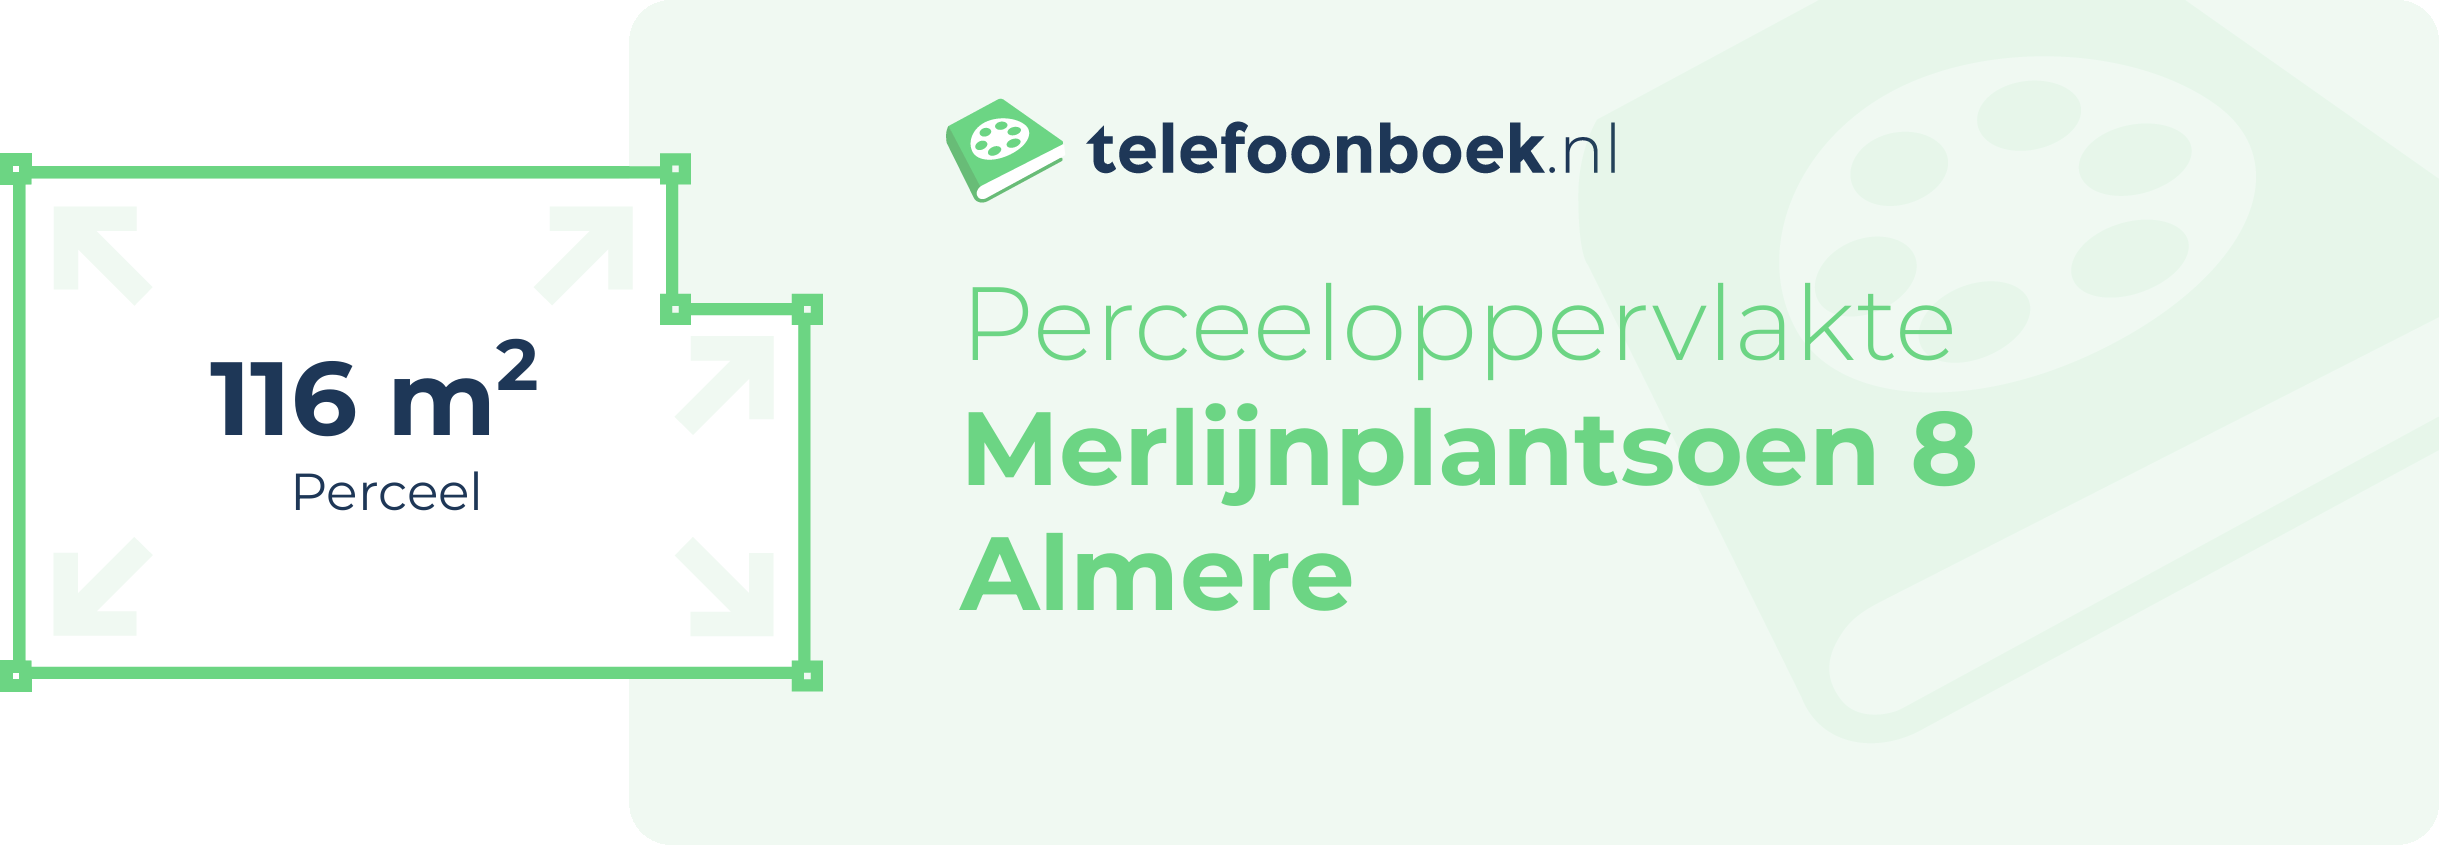 Perceeloppervlakte Merlijnplantsoen 8 Almere